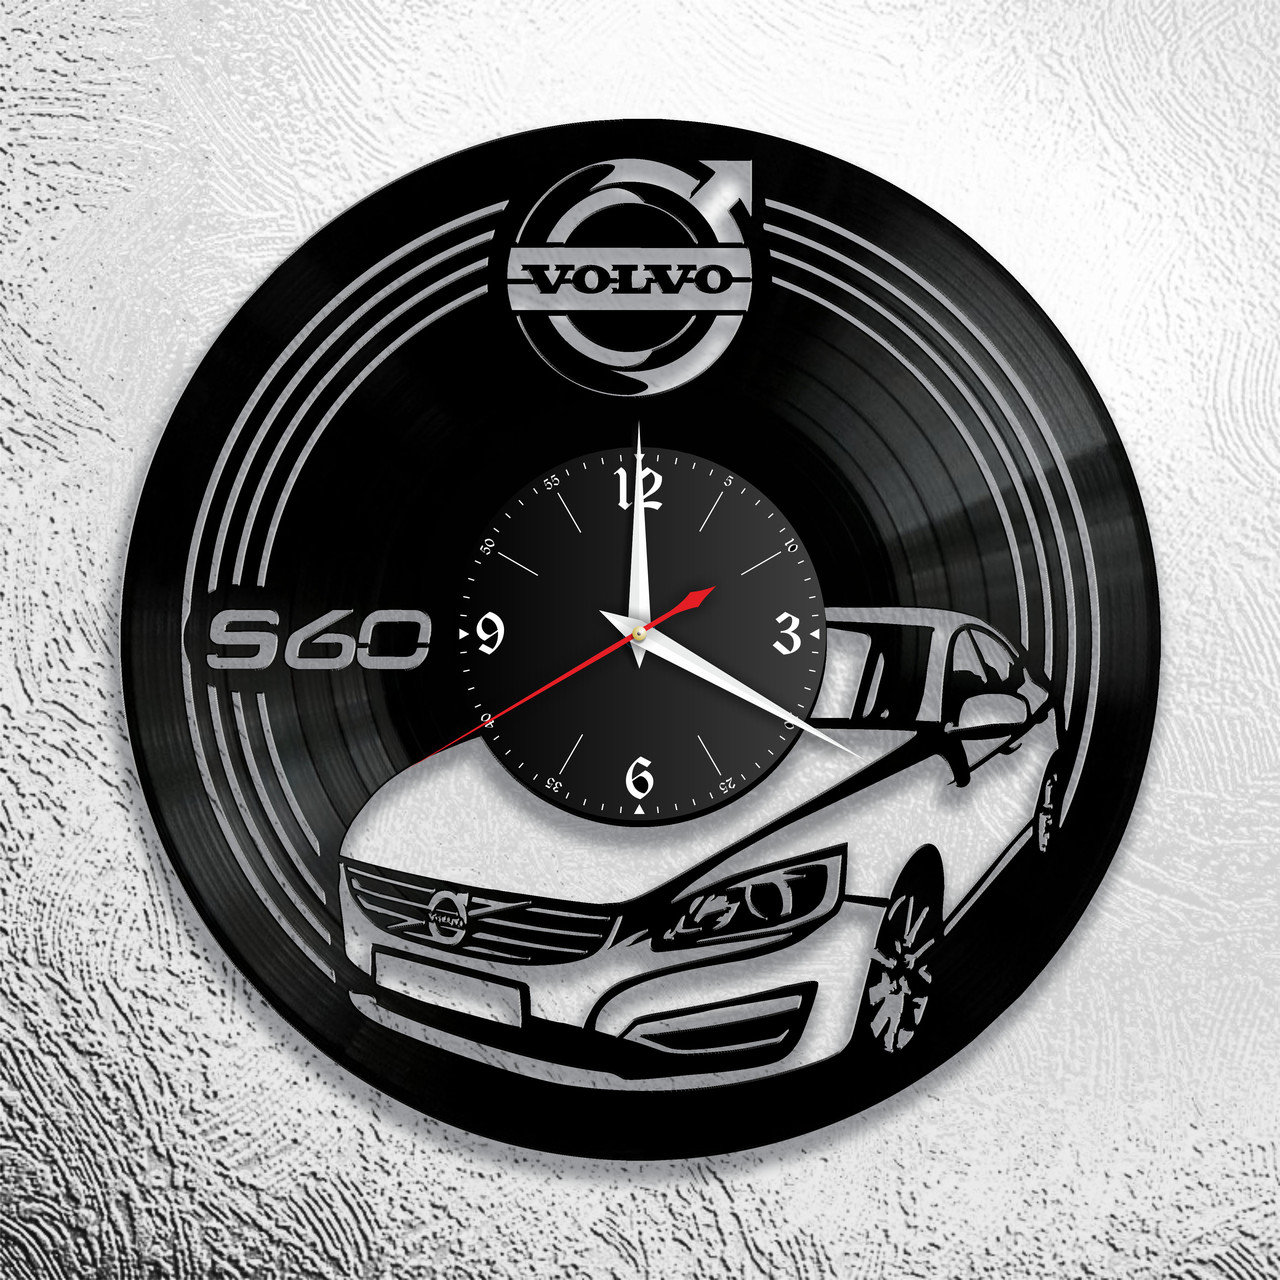 Часы из виниловой пластинки  "Volvo" версия 1 S60, фото 1